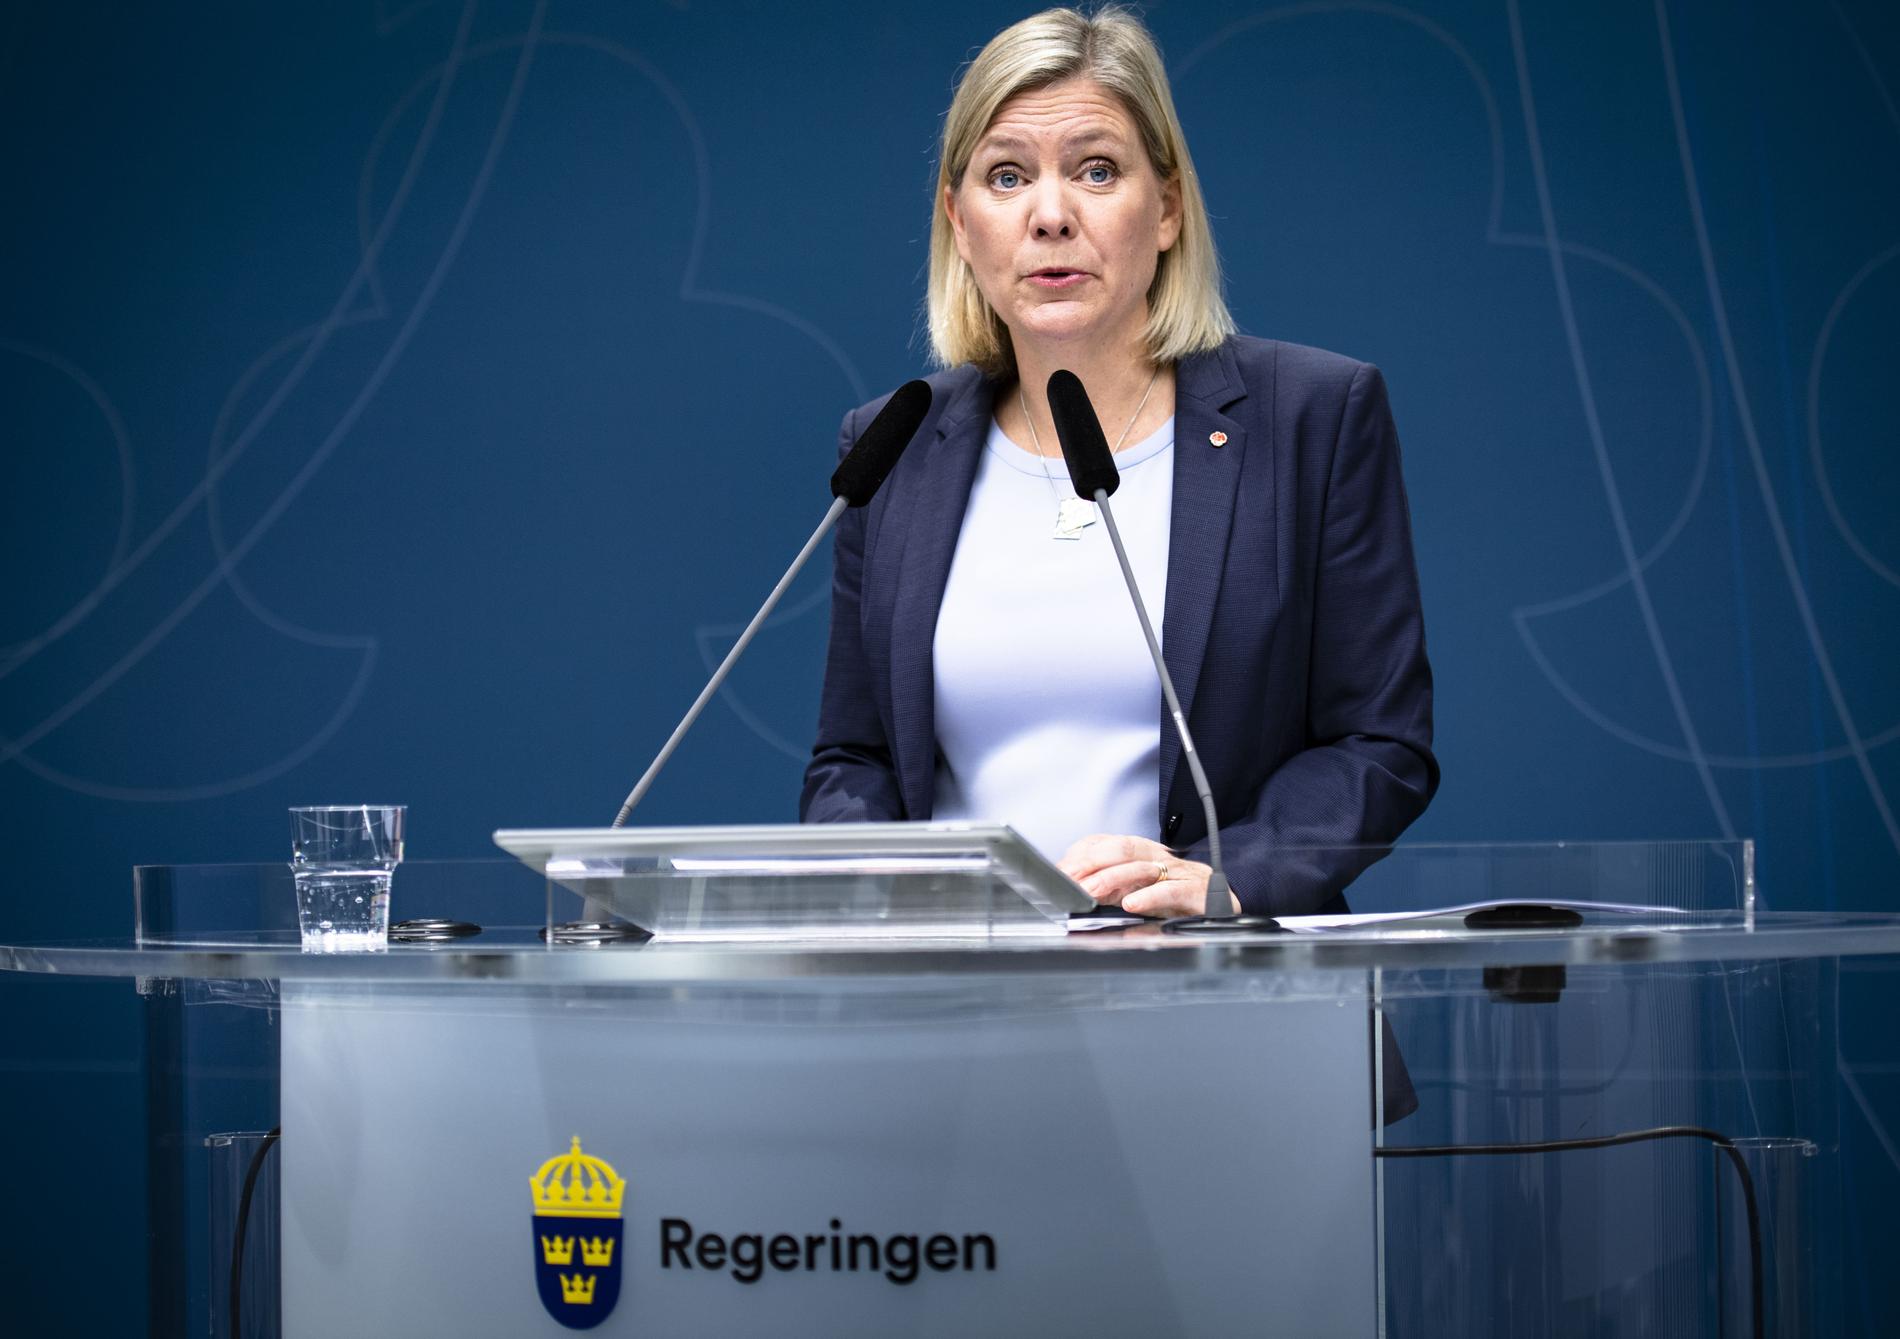 Magdalena Andersson är nöjd med att klyftorna i Sverige minskar. ”Det är klart att jag som socialdemokrat glädjer mig åt det. 2018 genomförde vi viktiga reformer för att försöka minska klyftorna”, säger hon.